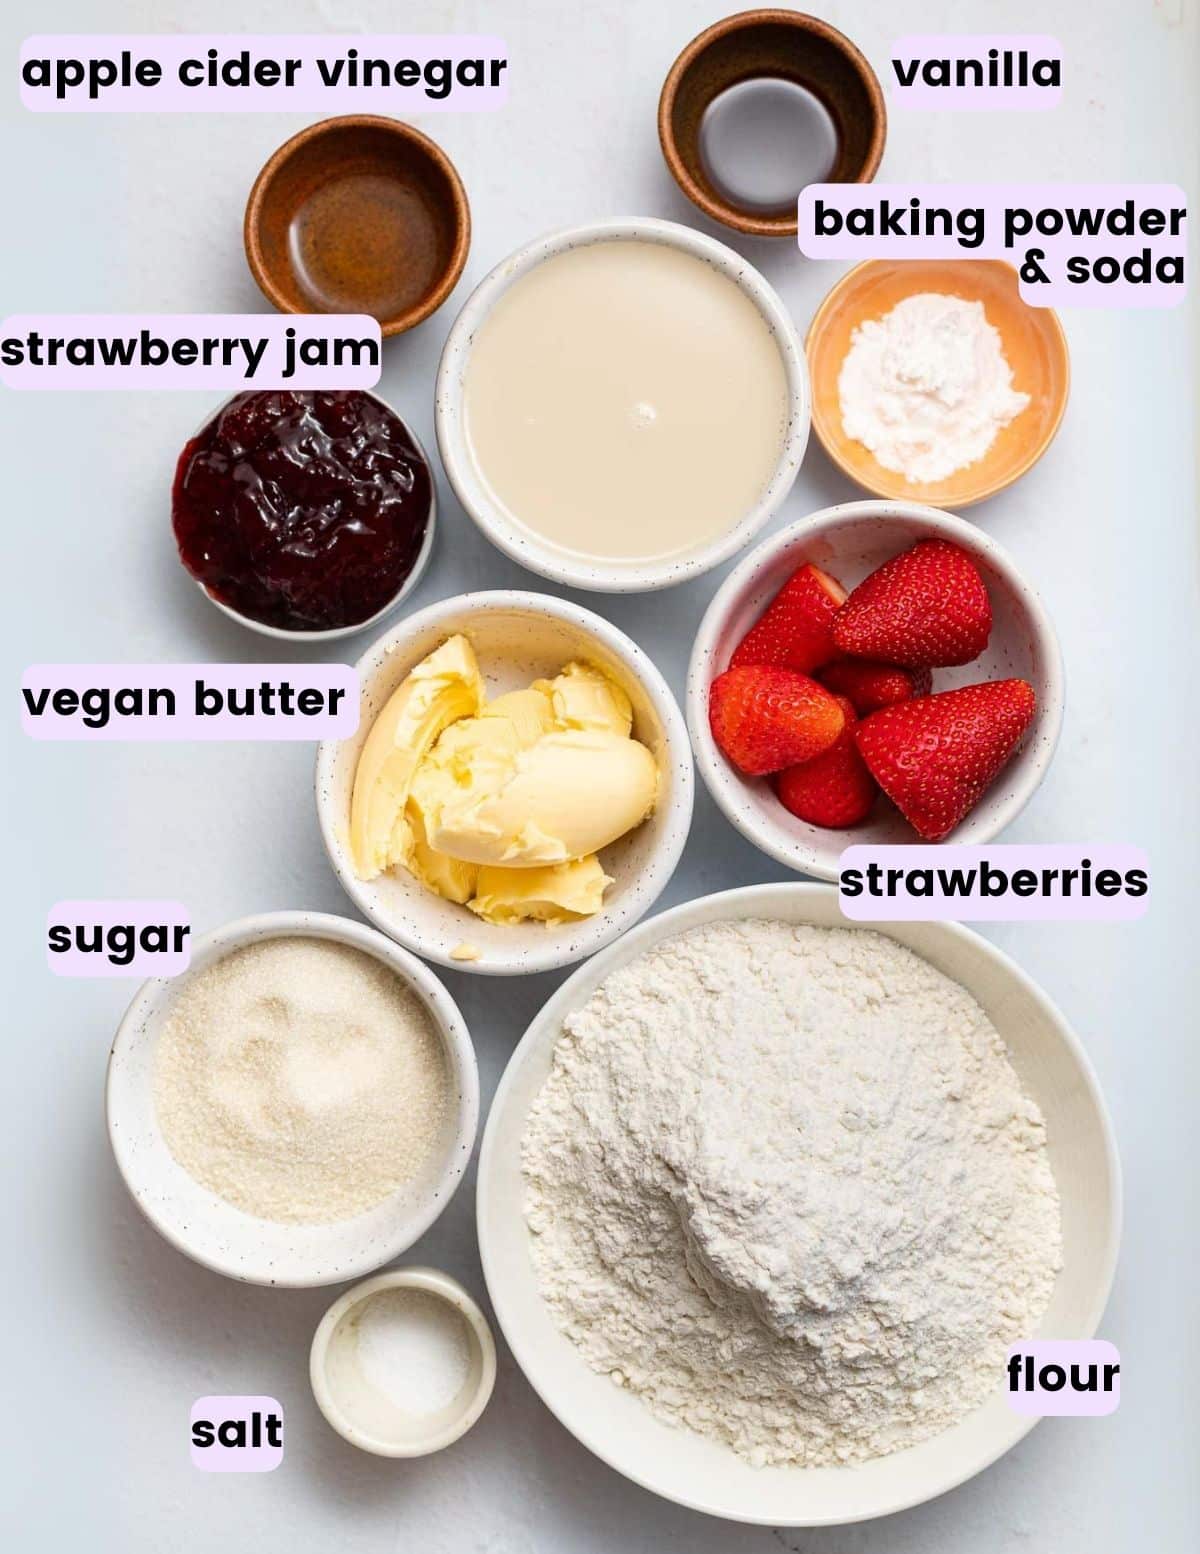 apple cider vinegar, vanilla, strawberry jam, baking powder and soda, dairy-free milk, vegan butter, strawberries, sugar, flour, salt. 